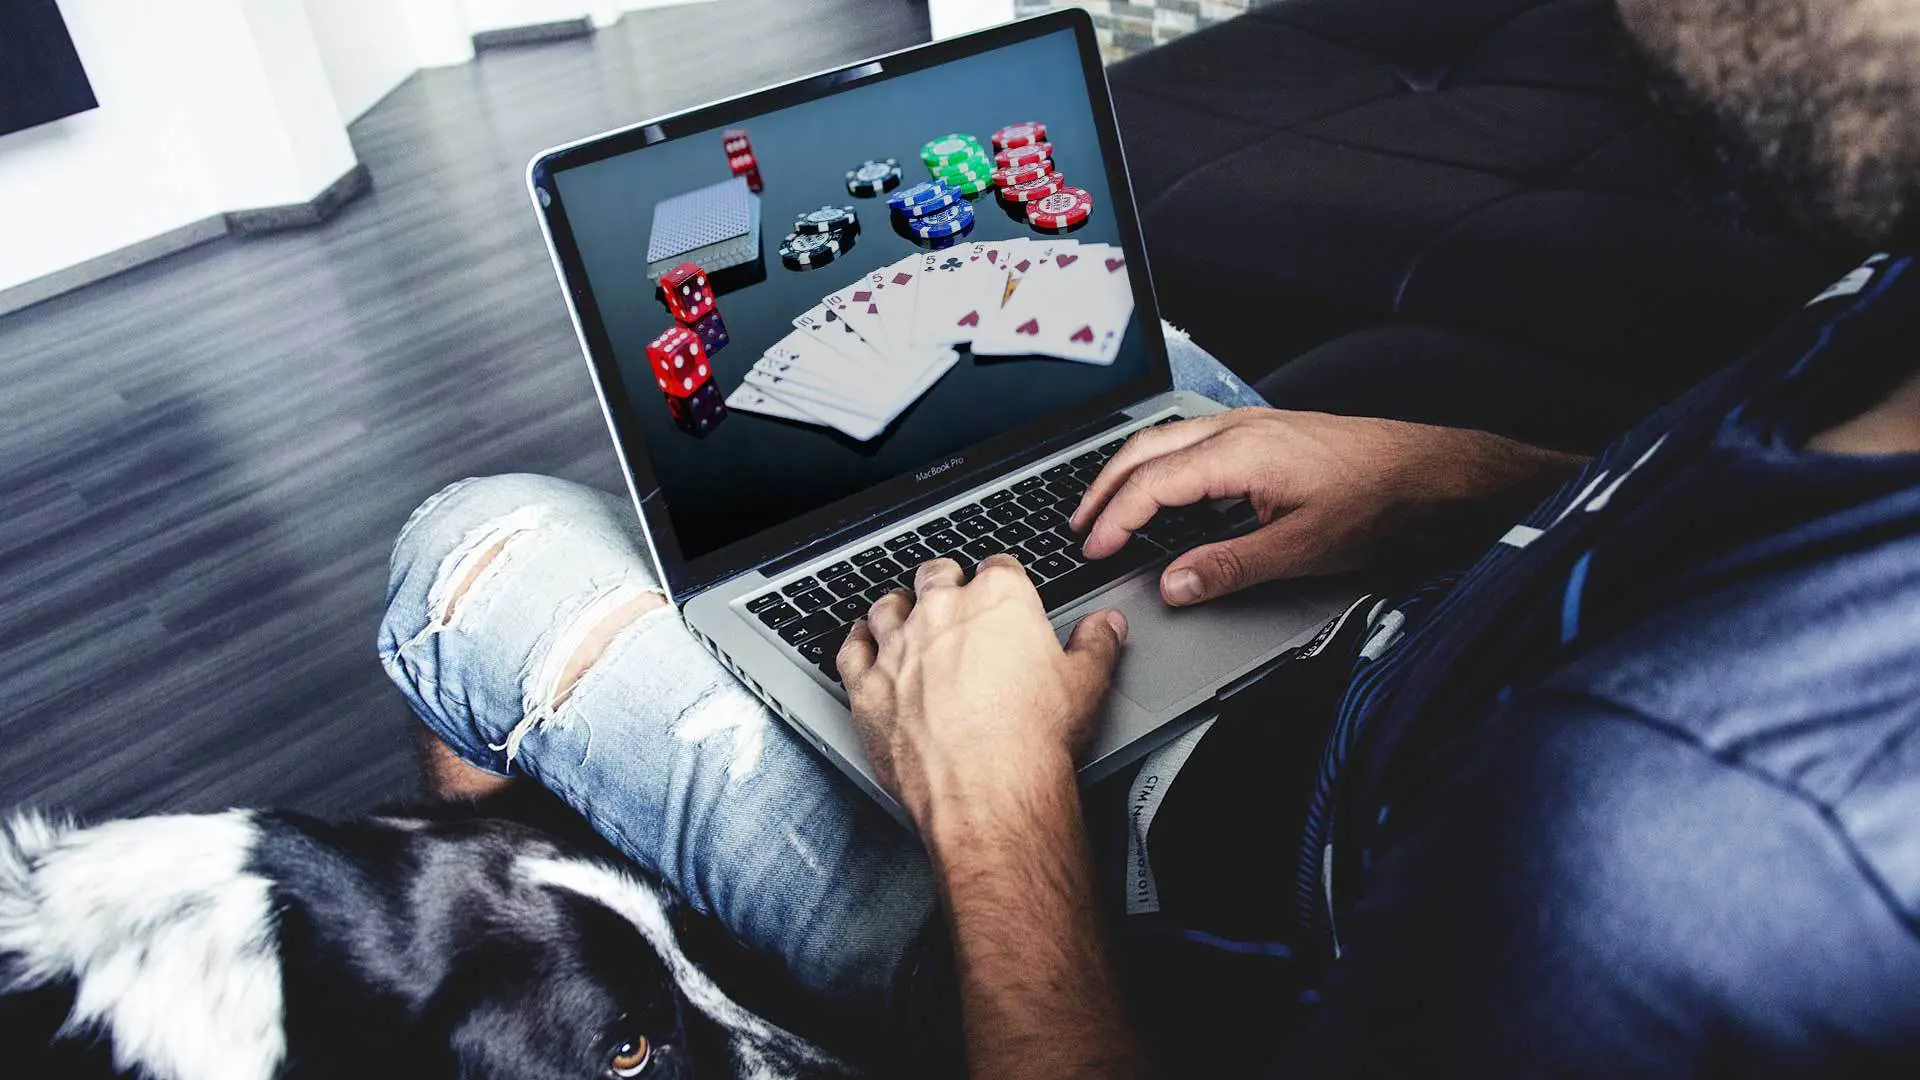 Какие развлечения в 2022 году выбирают мужчины в онлайн-казино